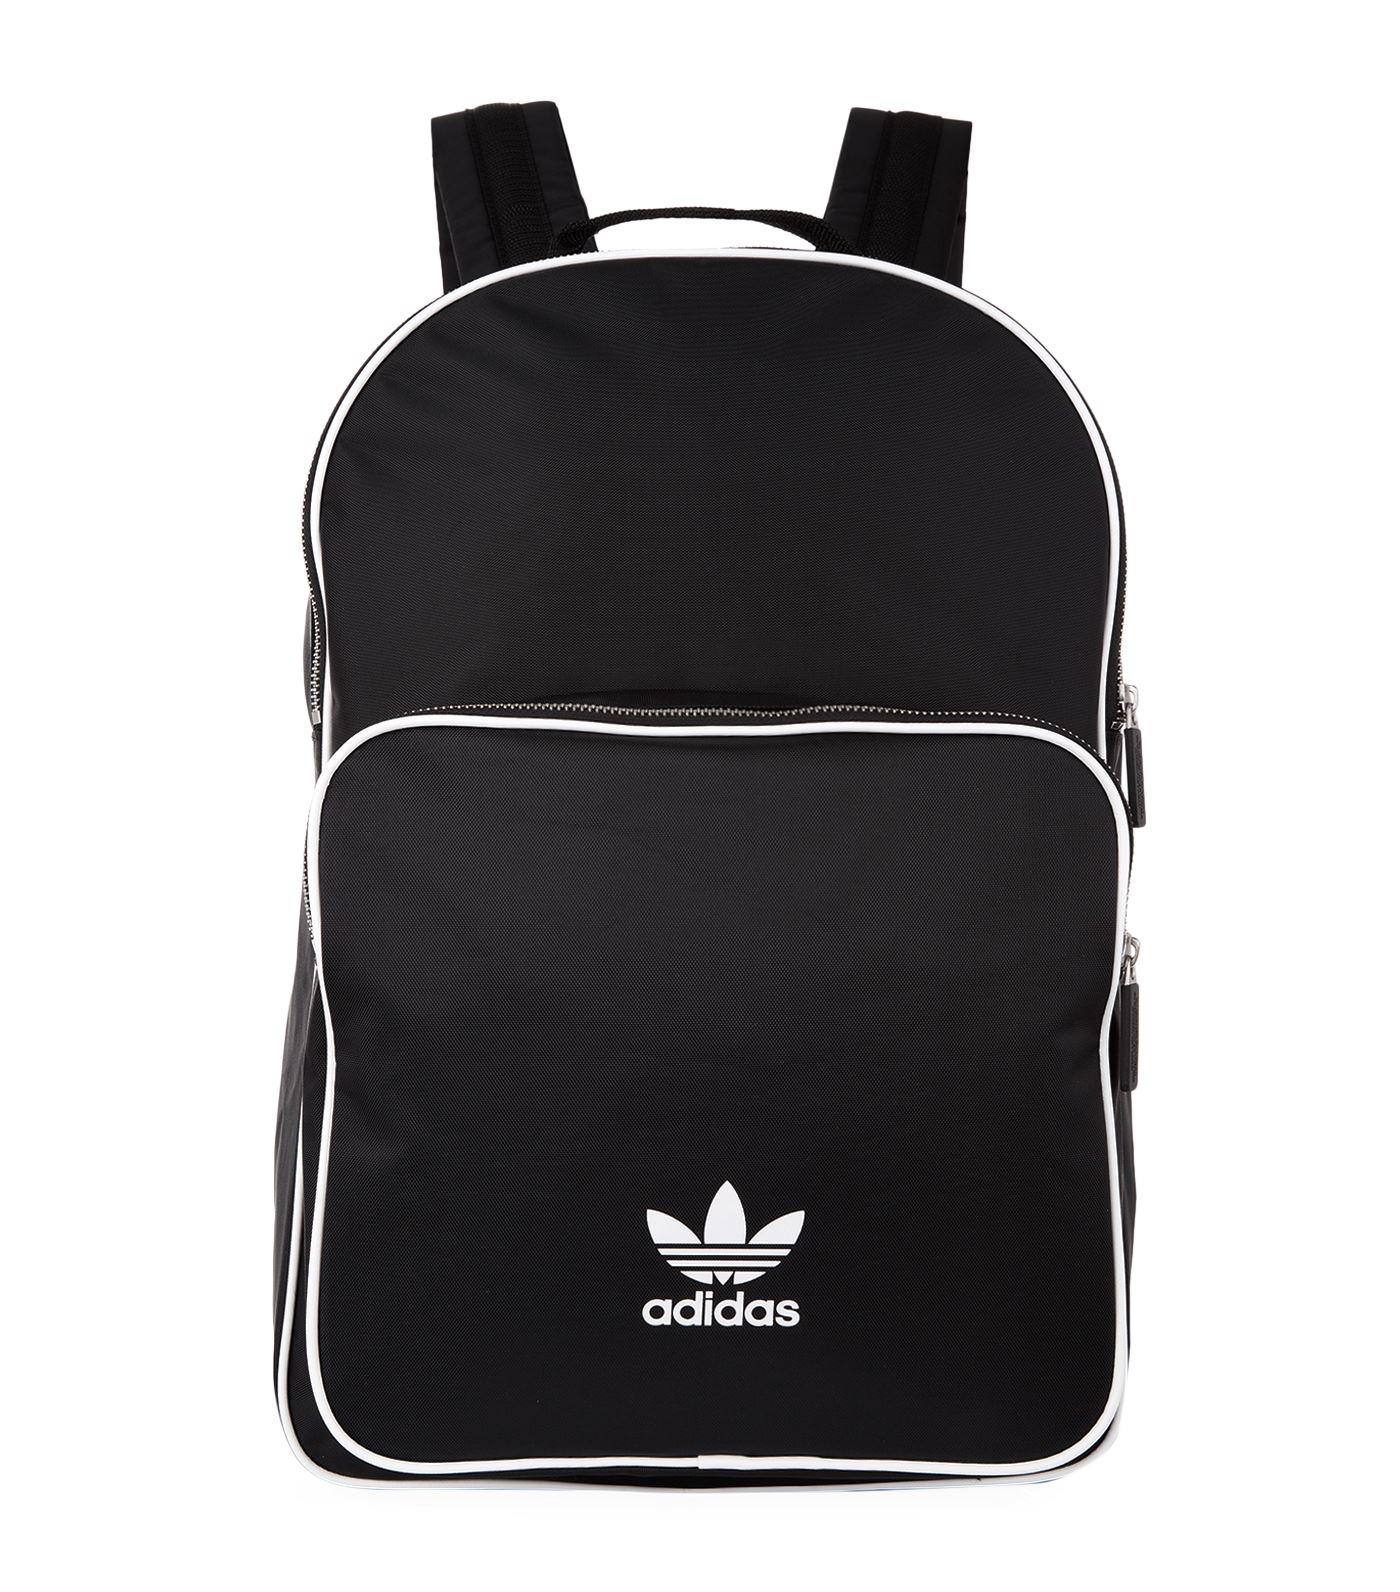 adidas Originals Adicolor Classic Backpack in Black for Men - Lyst